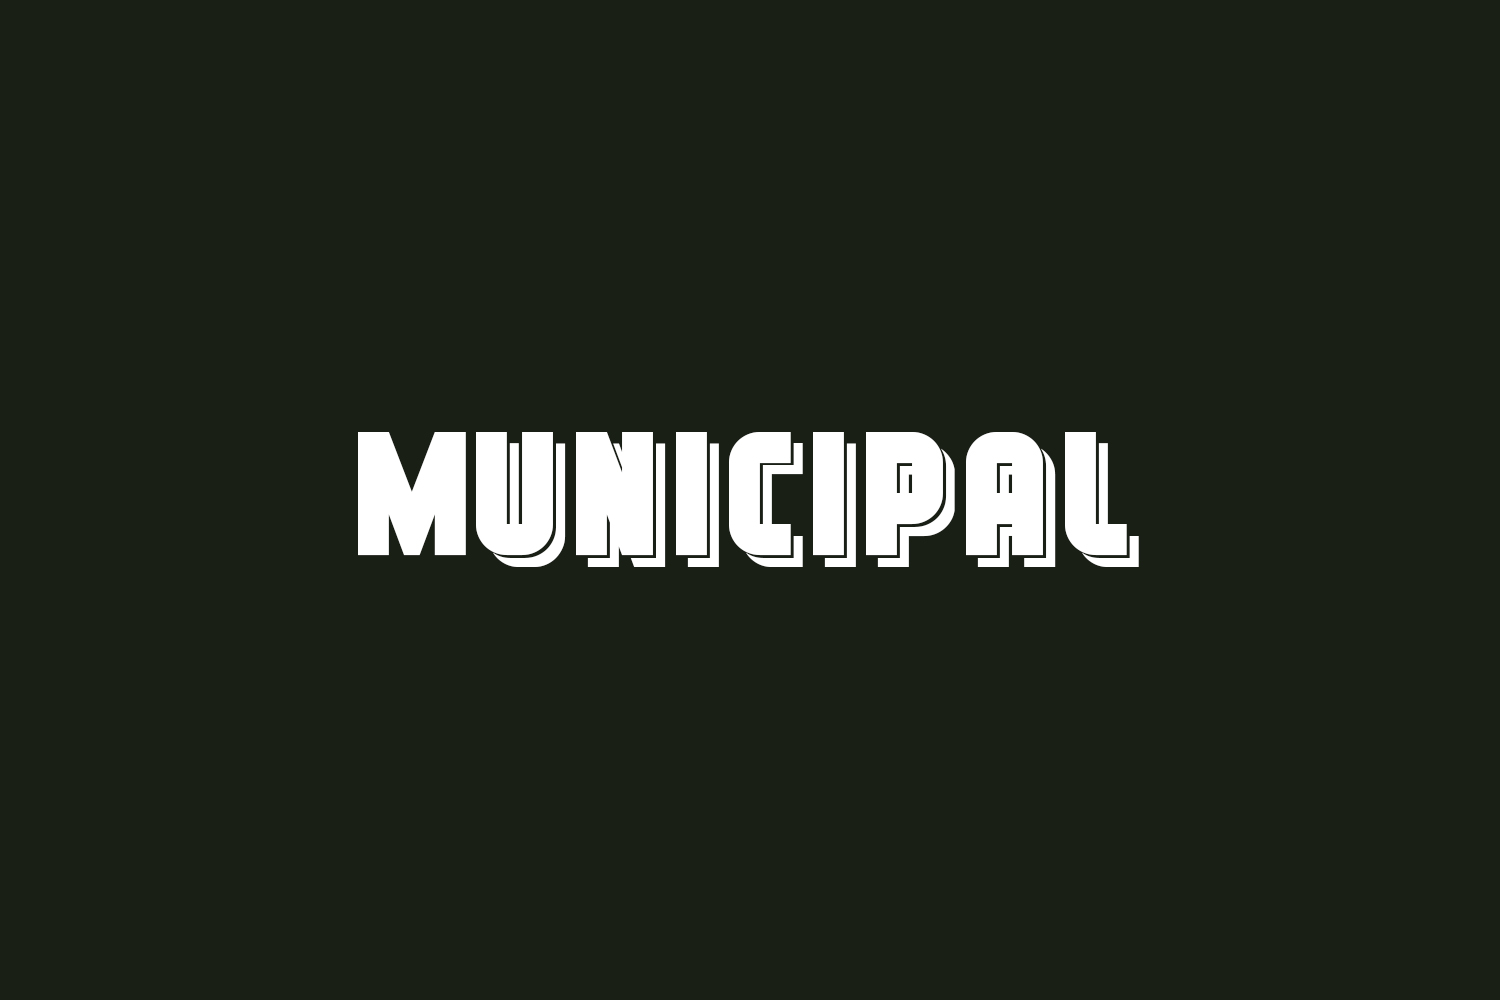 Municipal Free Font